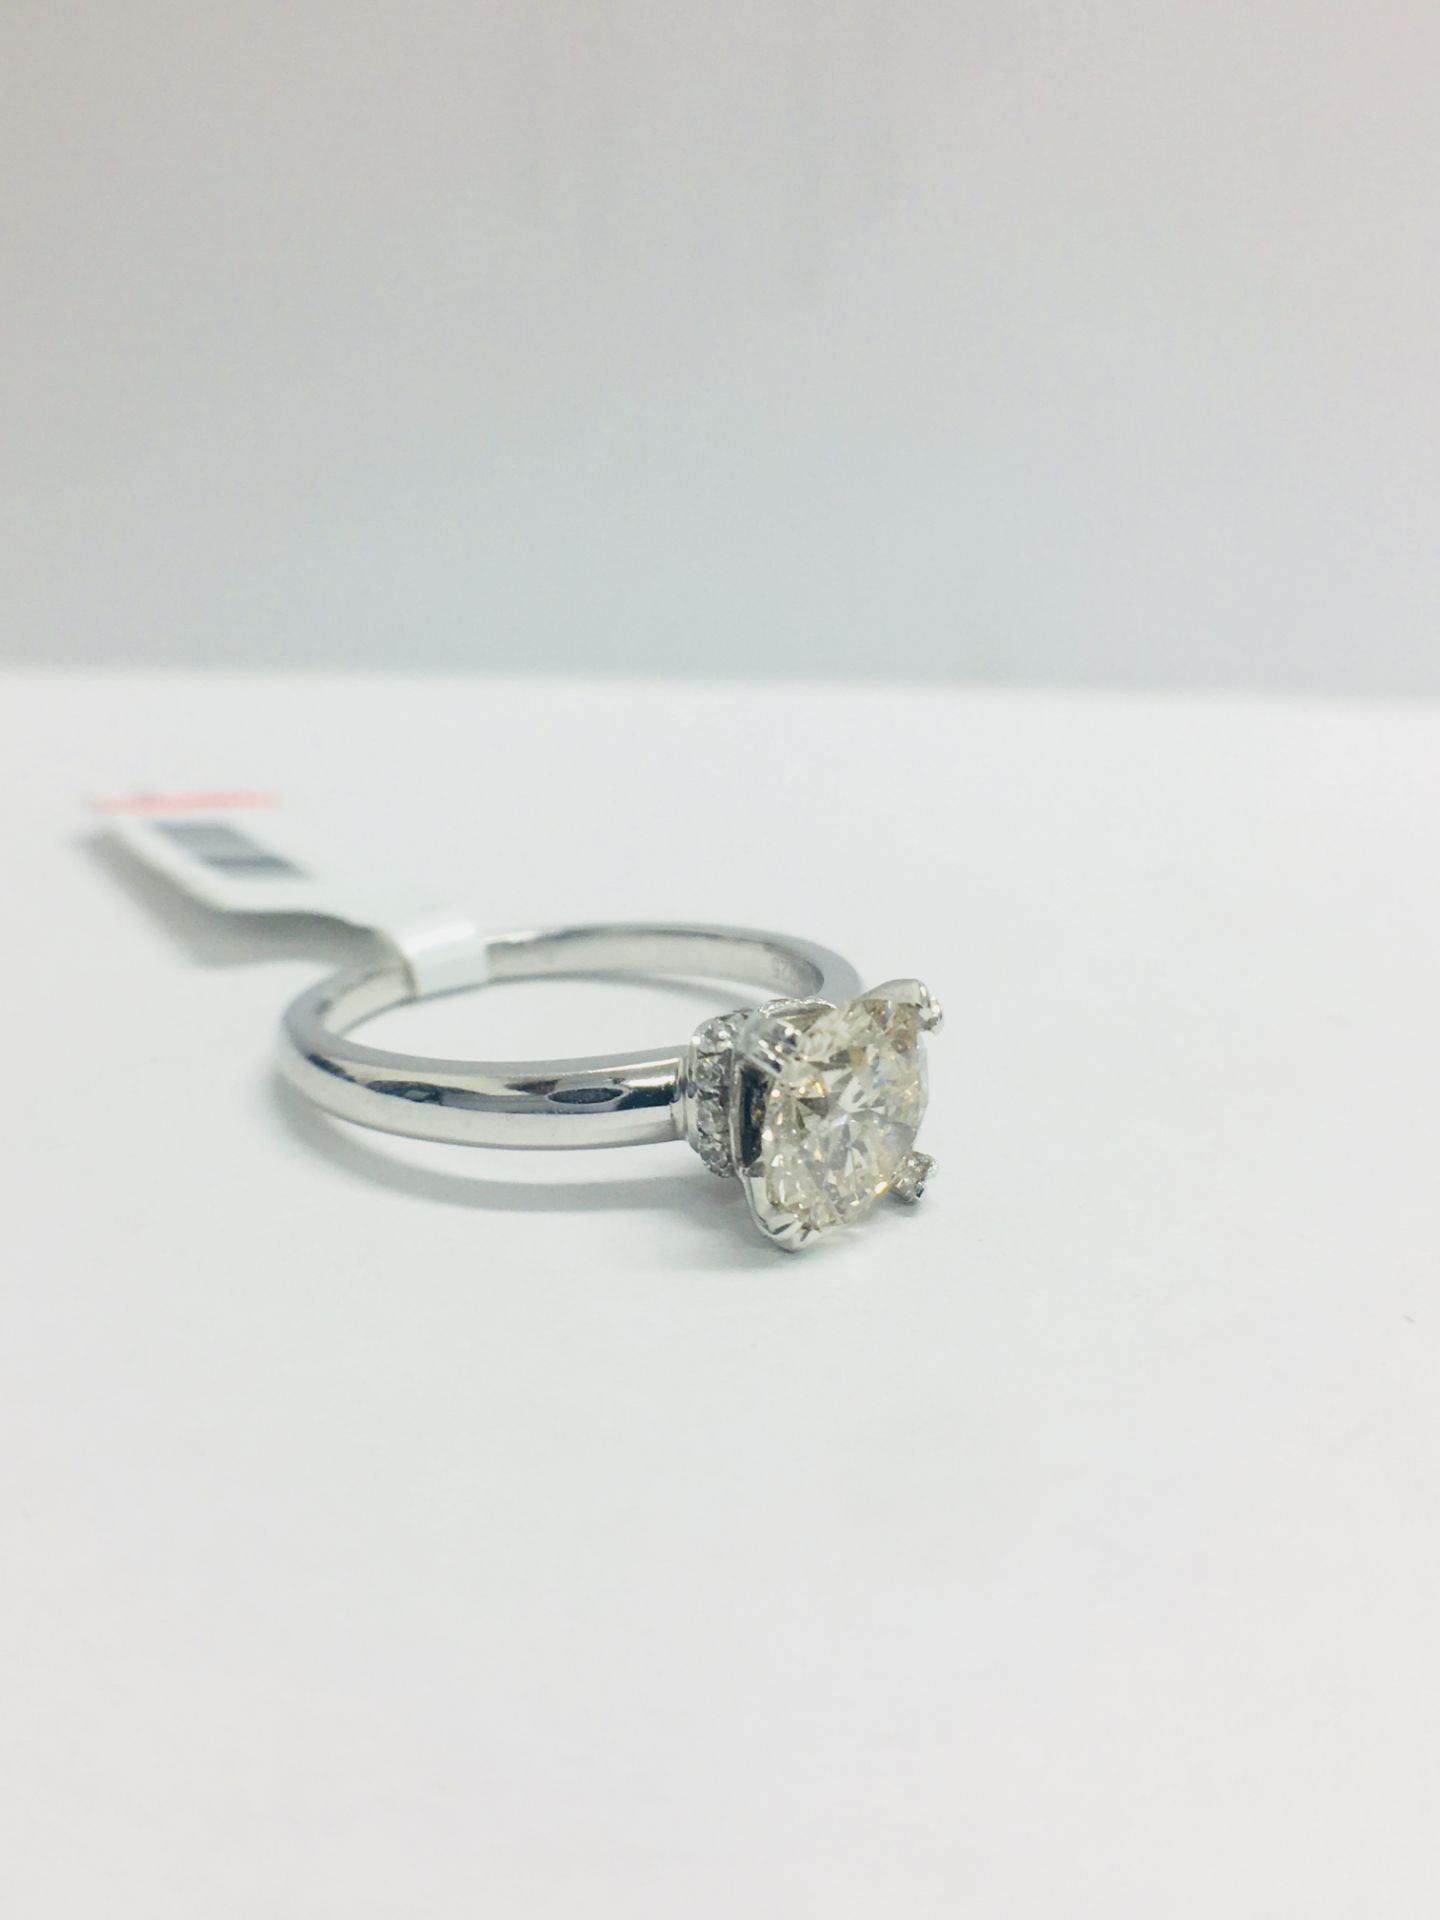 1ct Diamond Solitaire ring set in Platinum diamnd setting - Image 11 of 13